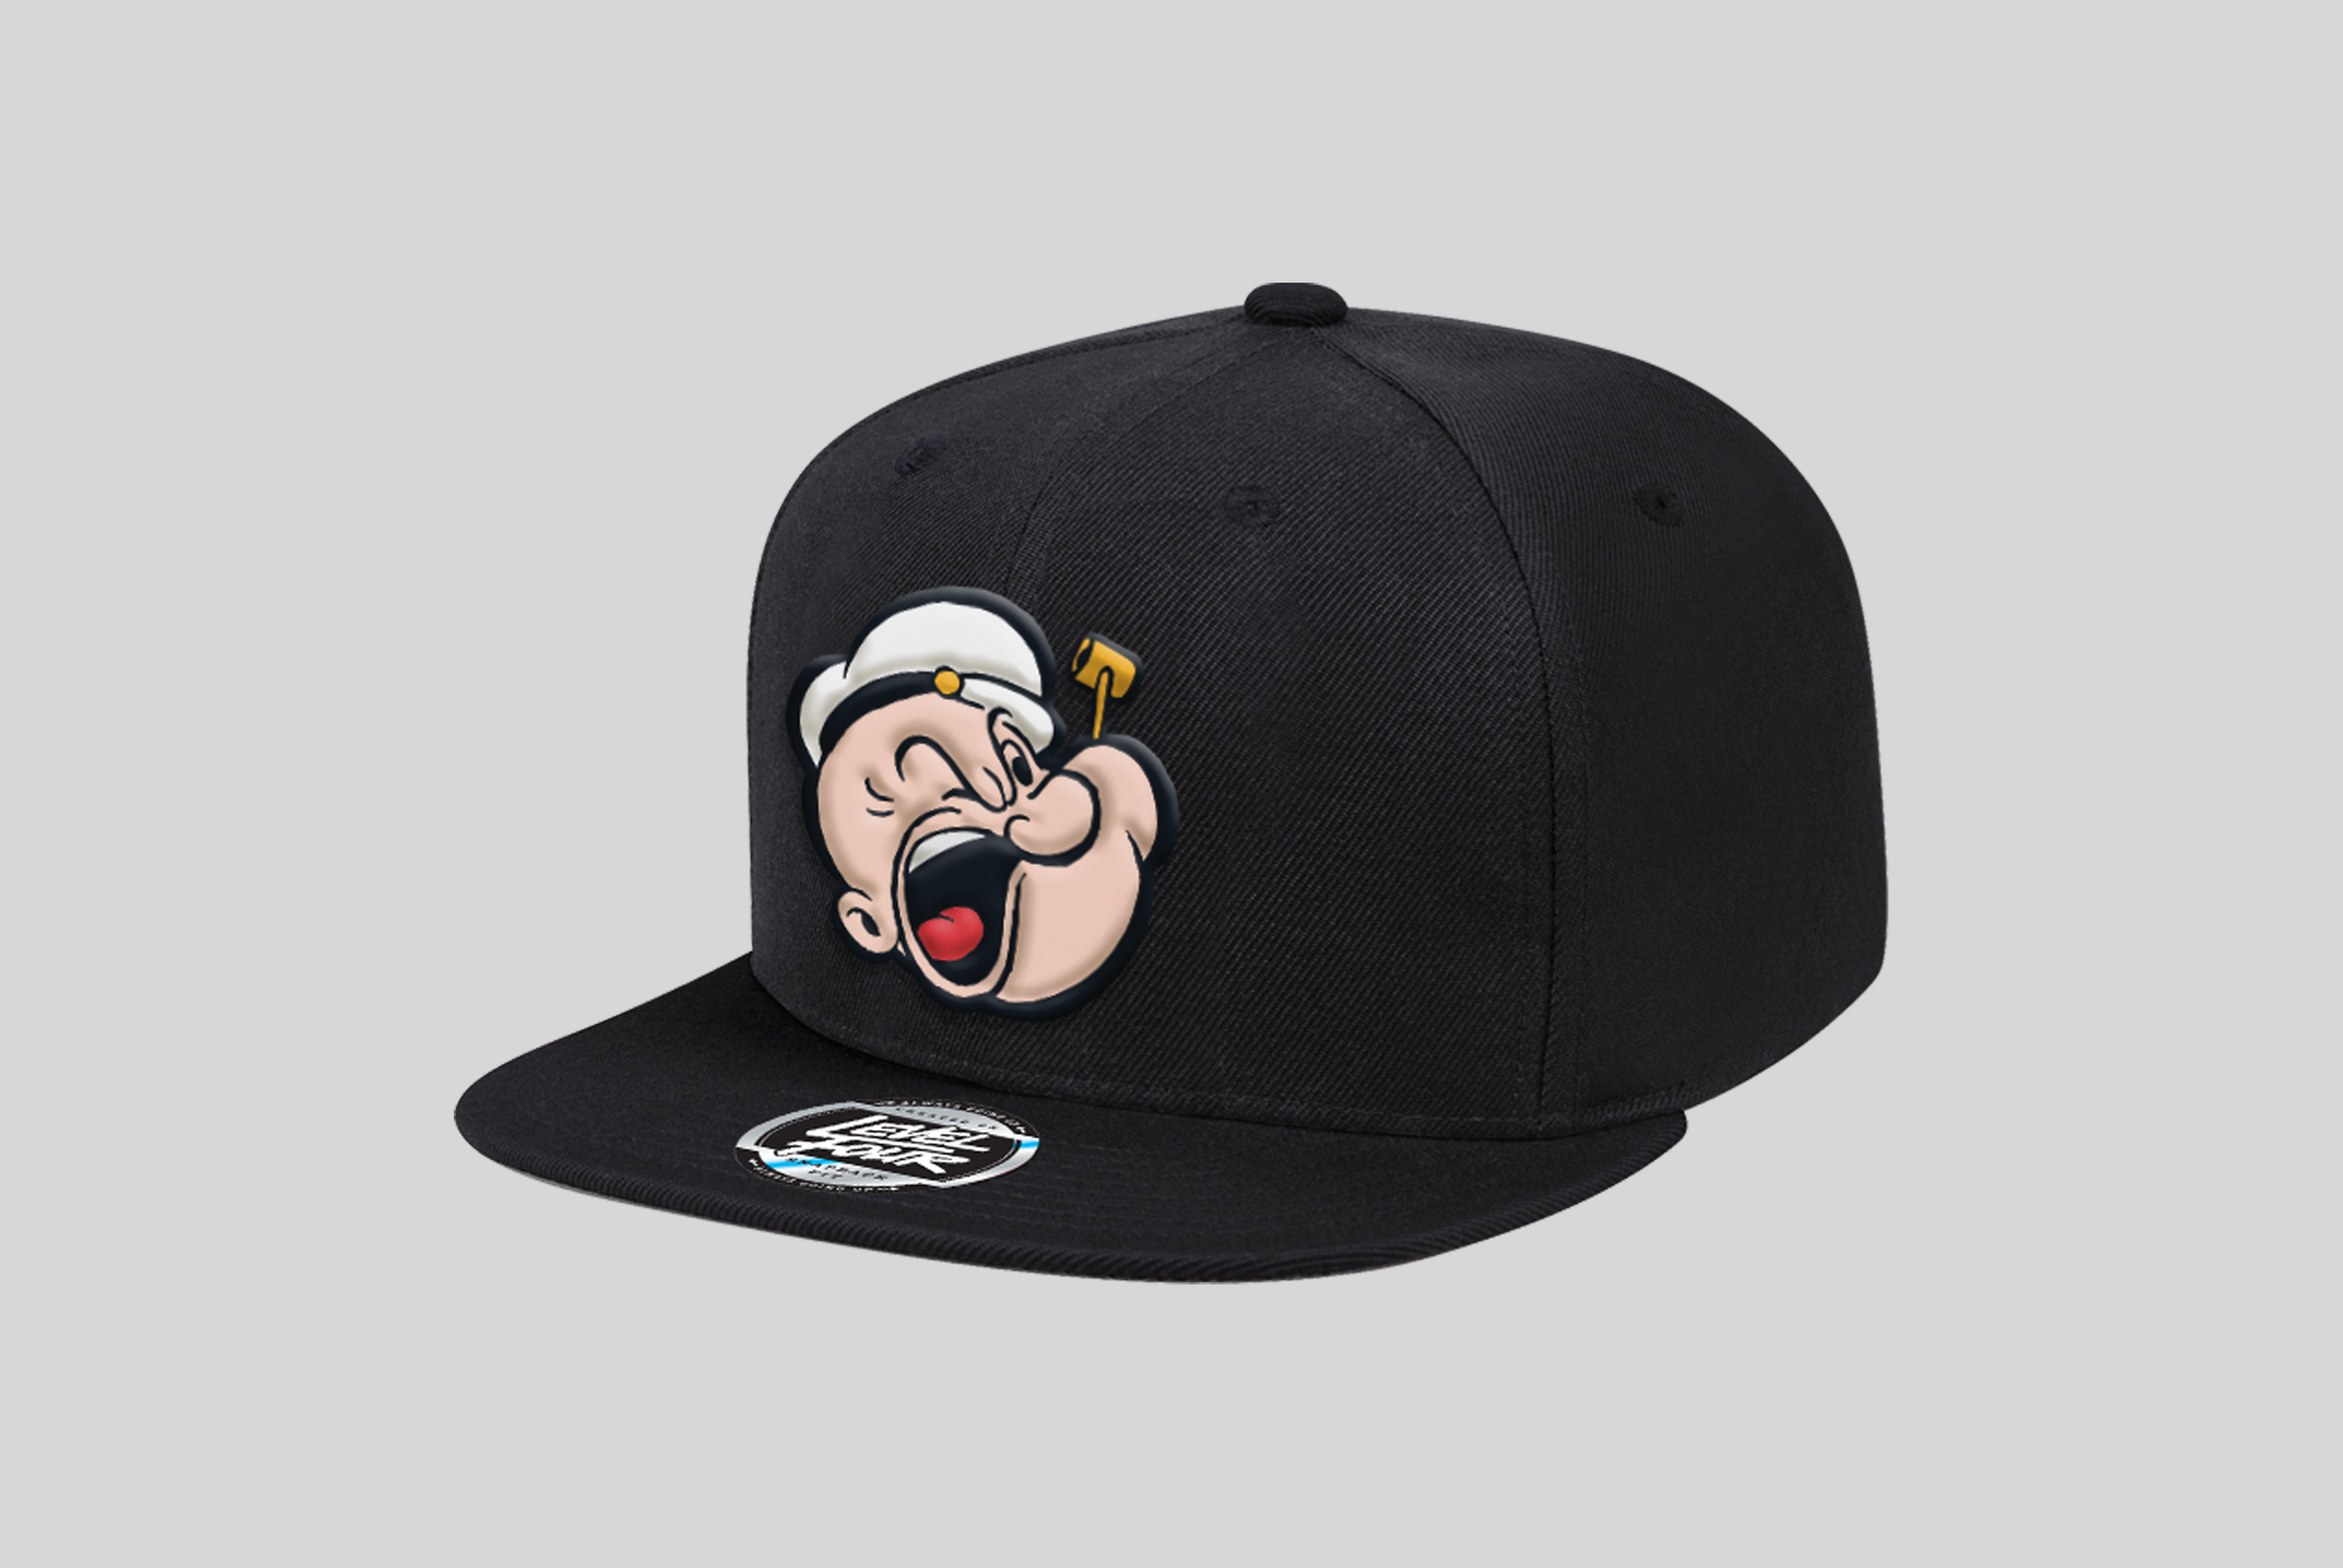 – Popeye Four The Snapback Sailor OG Hat Level